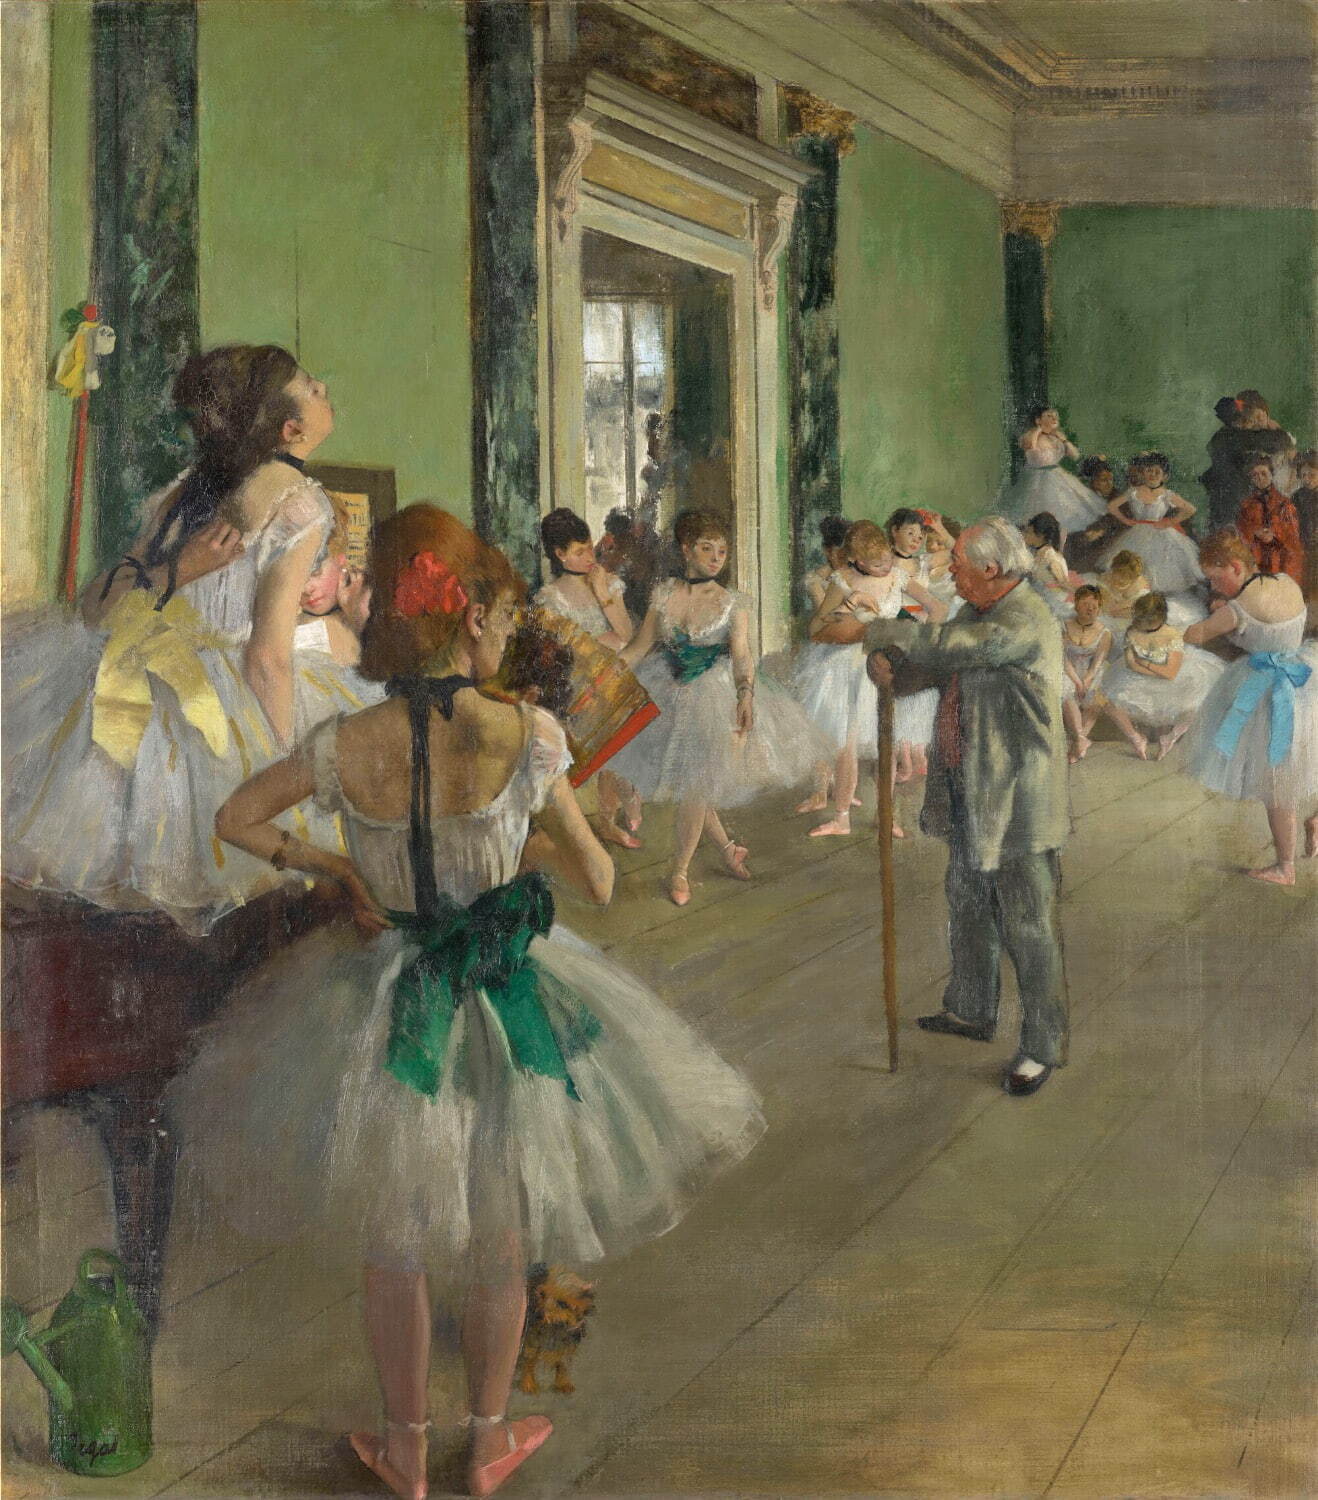 エドガー・ドガ《バレエの授業》1873-76年　オルセー美術館
Photo © RMN-Grand Palais (musée d